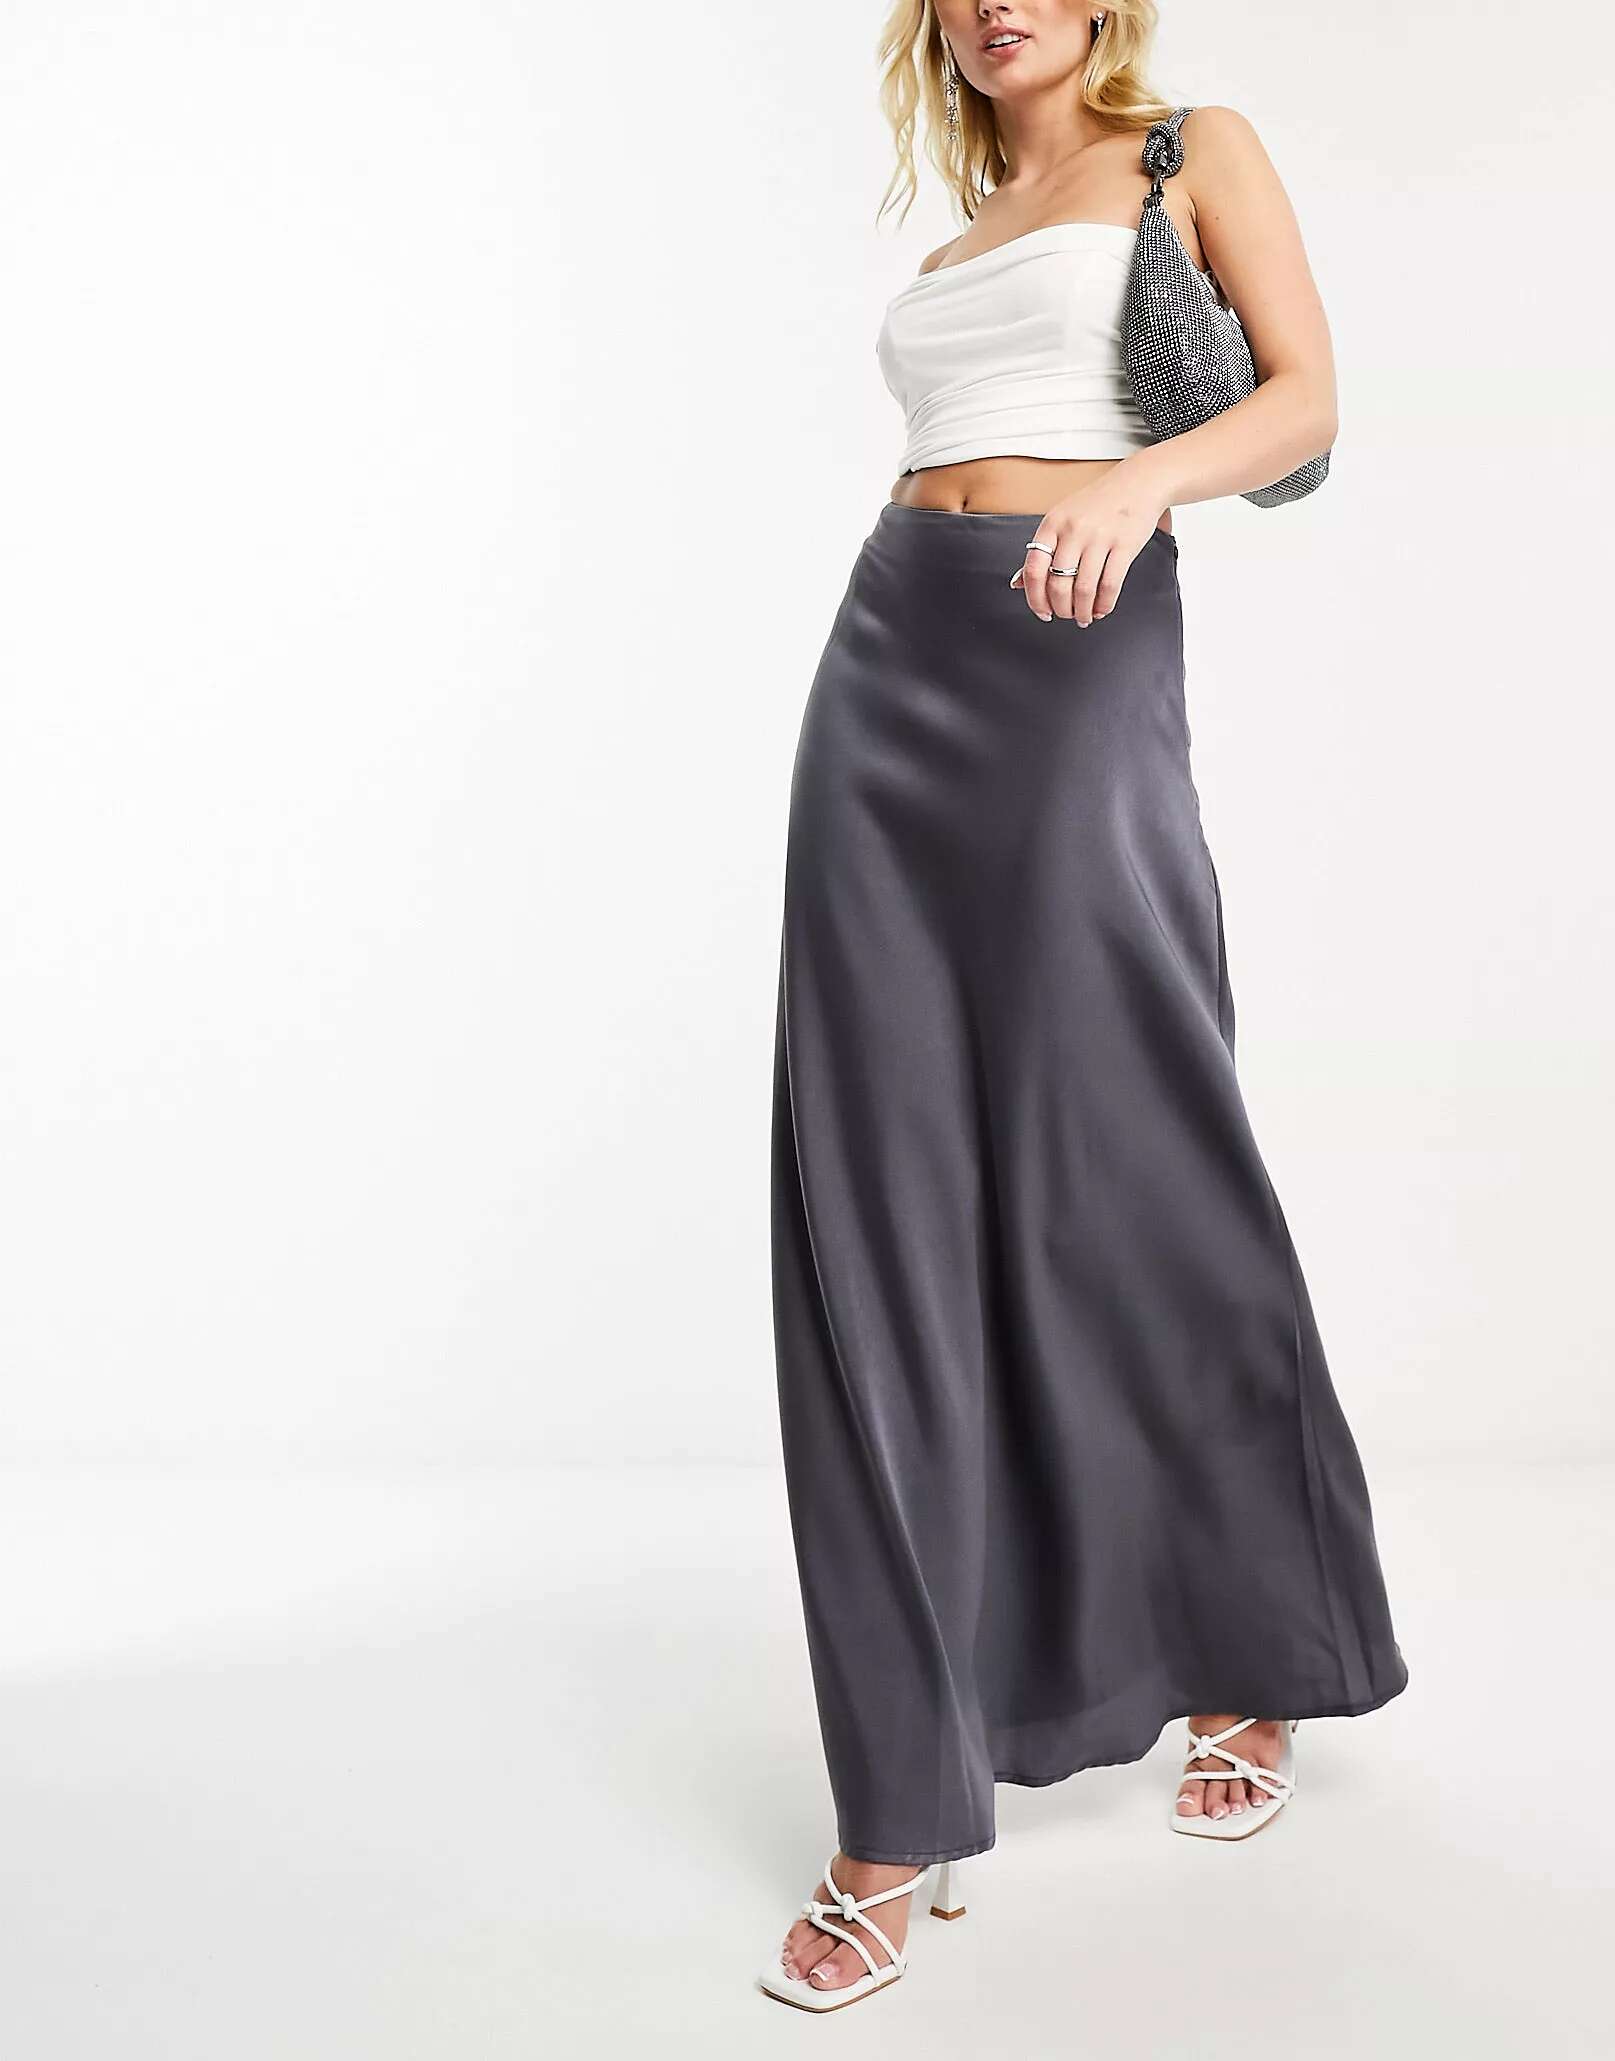 Темно-серая атласная юбка макси NaaNaa с диагональным узором юбка island серая с узором 44 размер новая